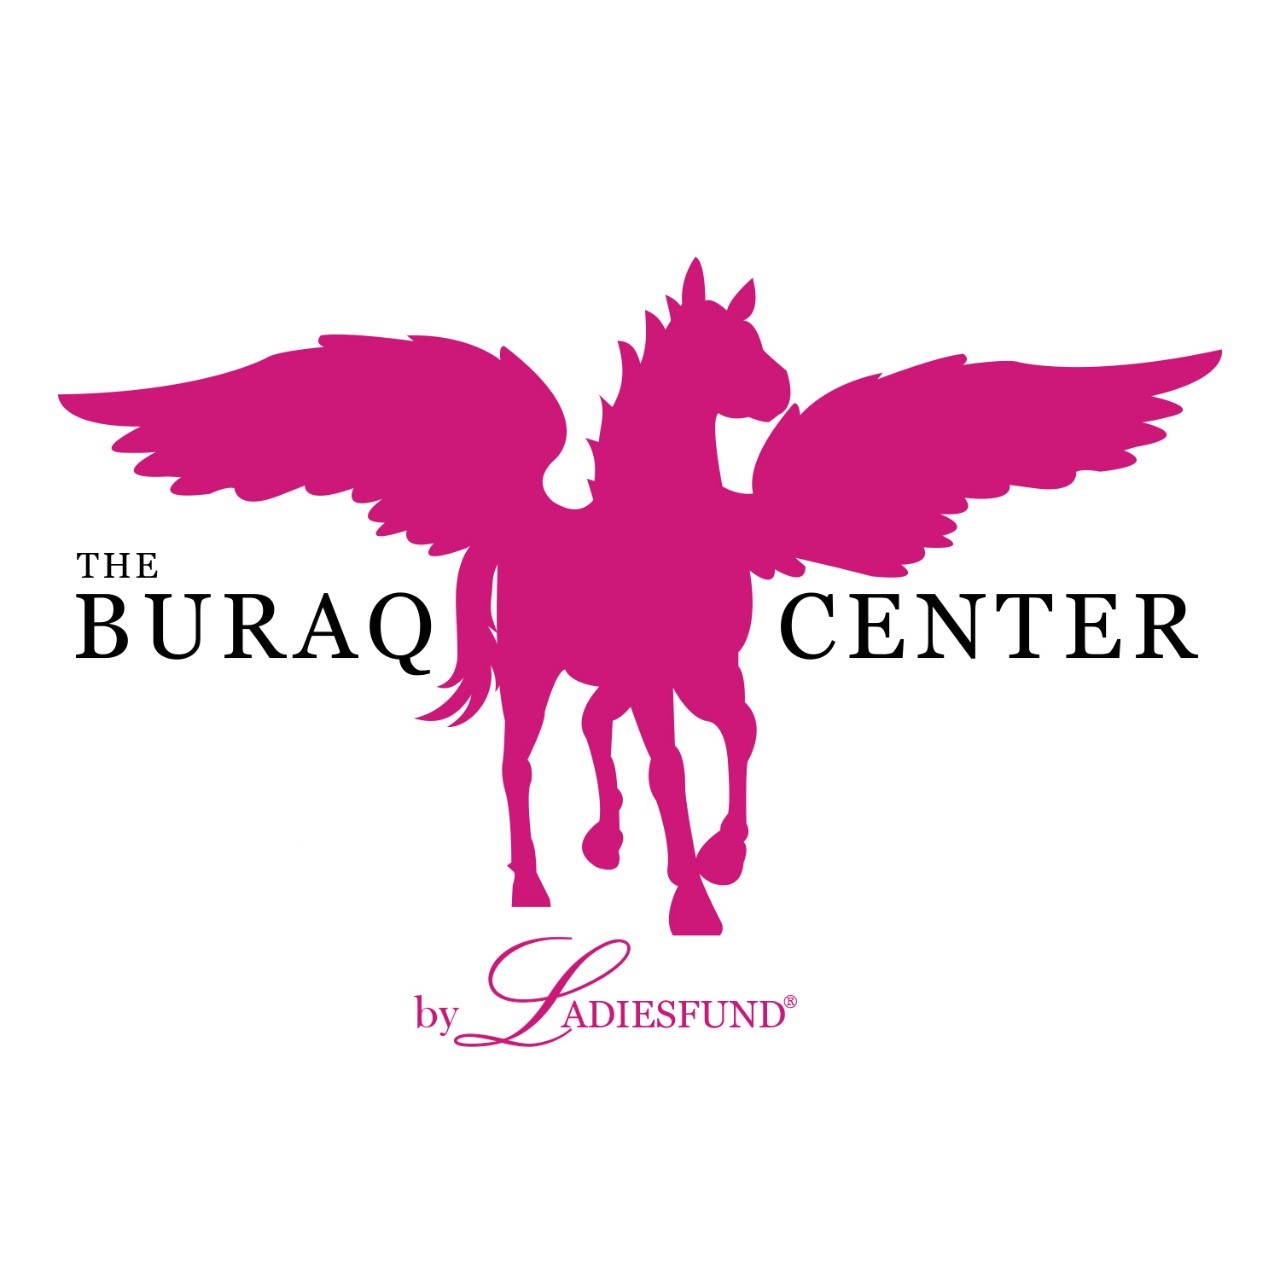 Ladiesfund buraq center